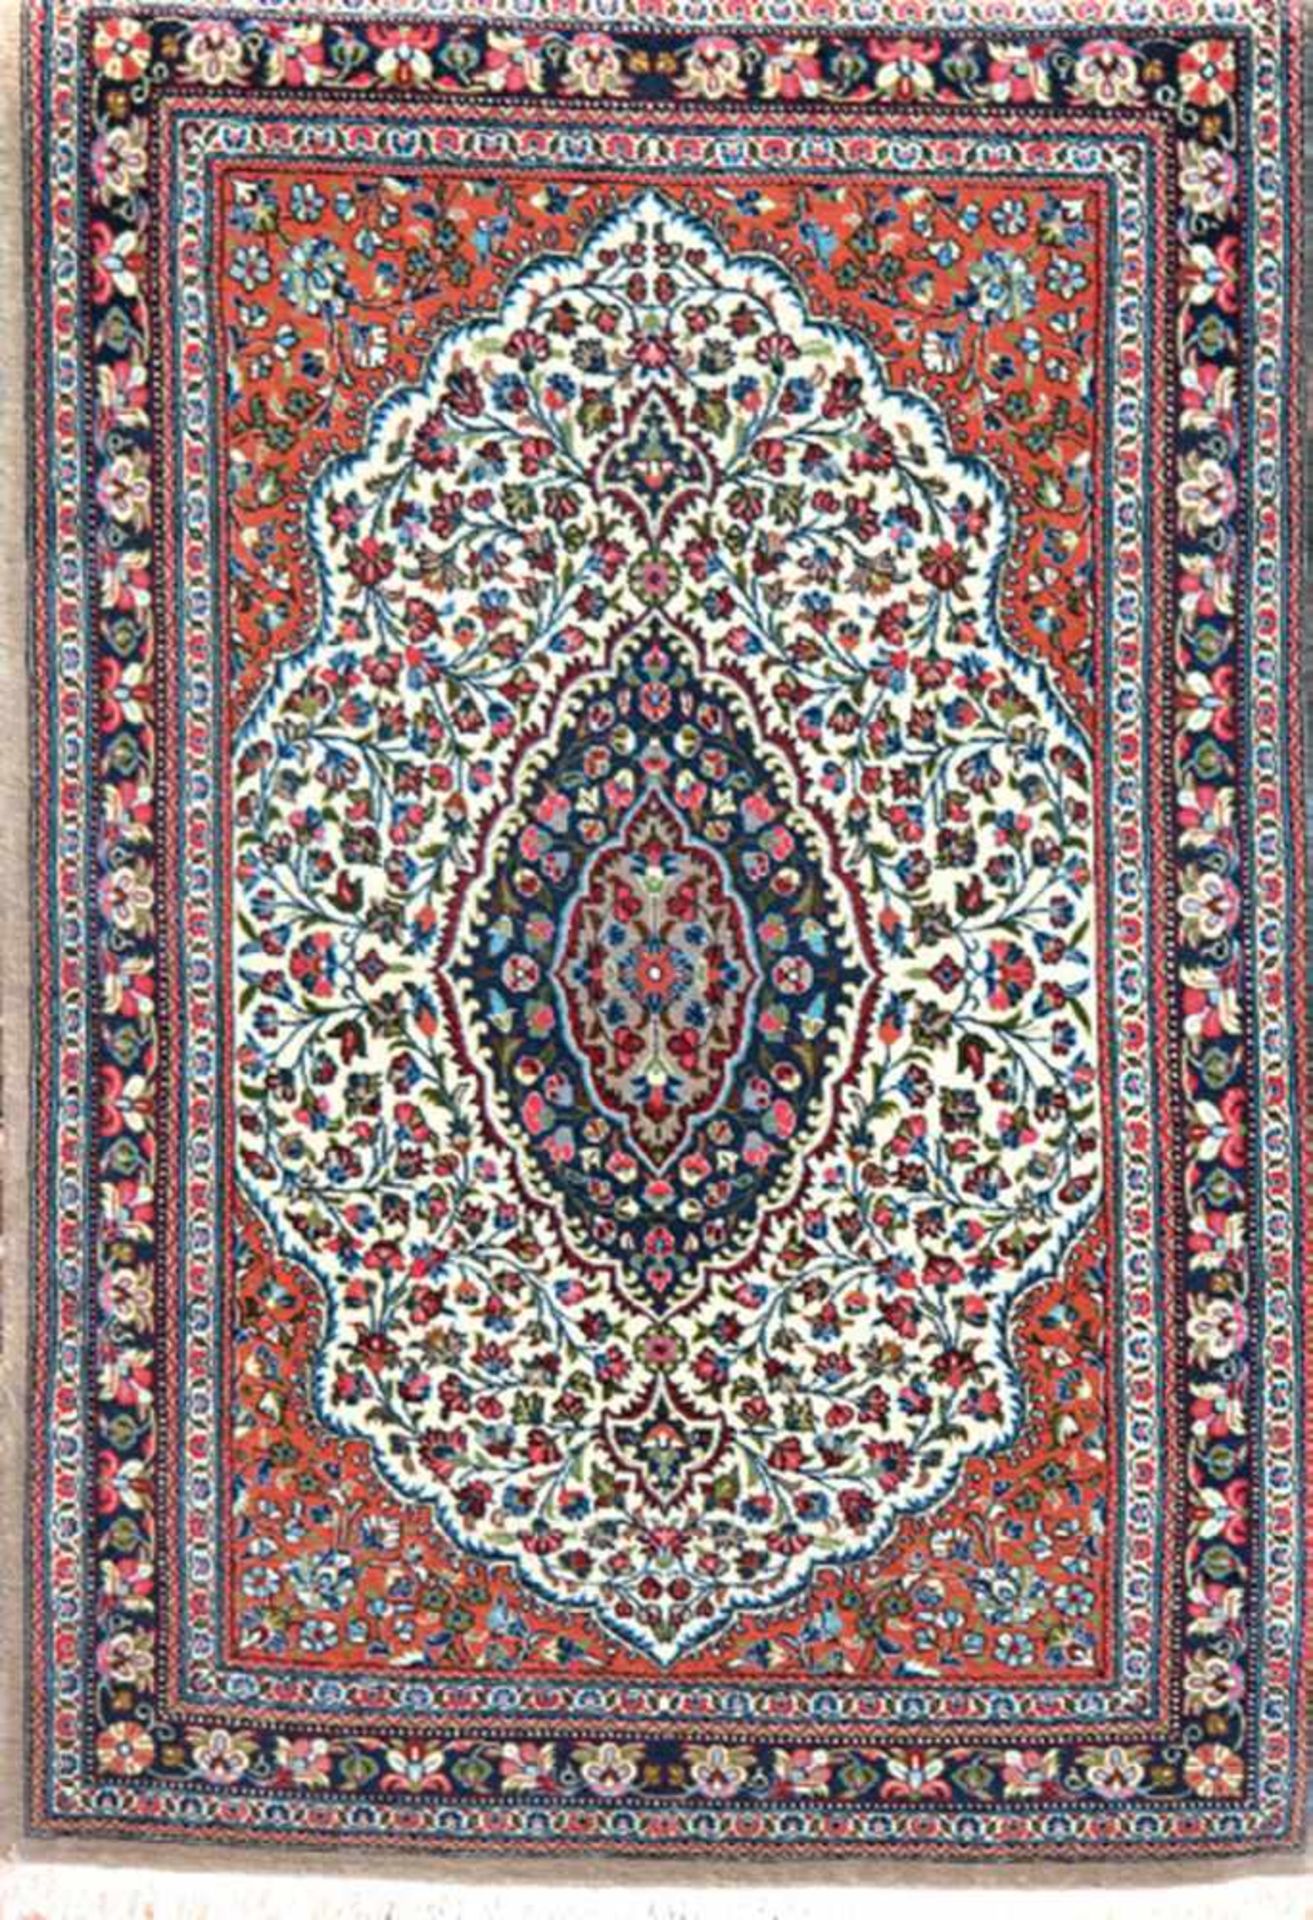 Ghom, Persien, rot- /blaugrundig, mit zentralem Medaillon und floralen Motiven, guterZusatnd, 122x82